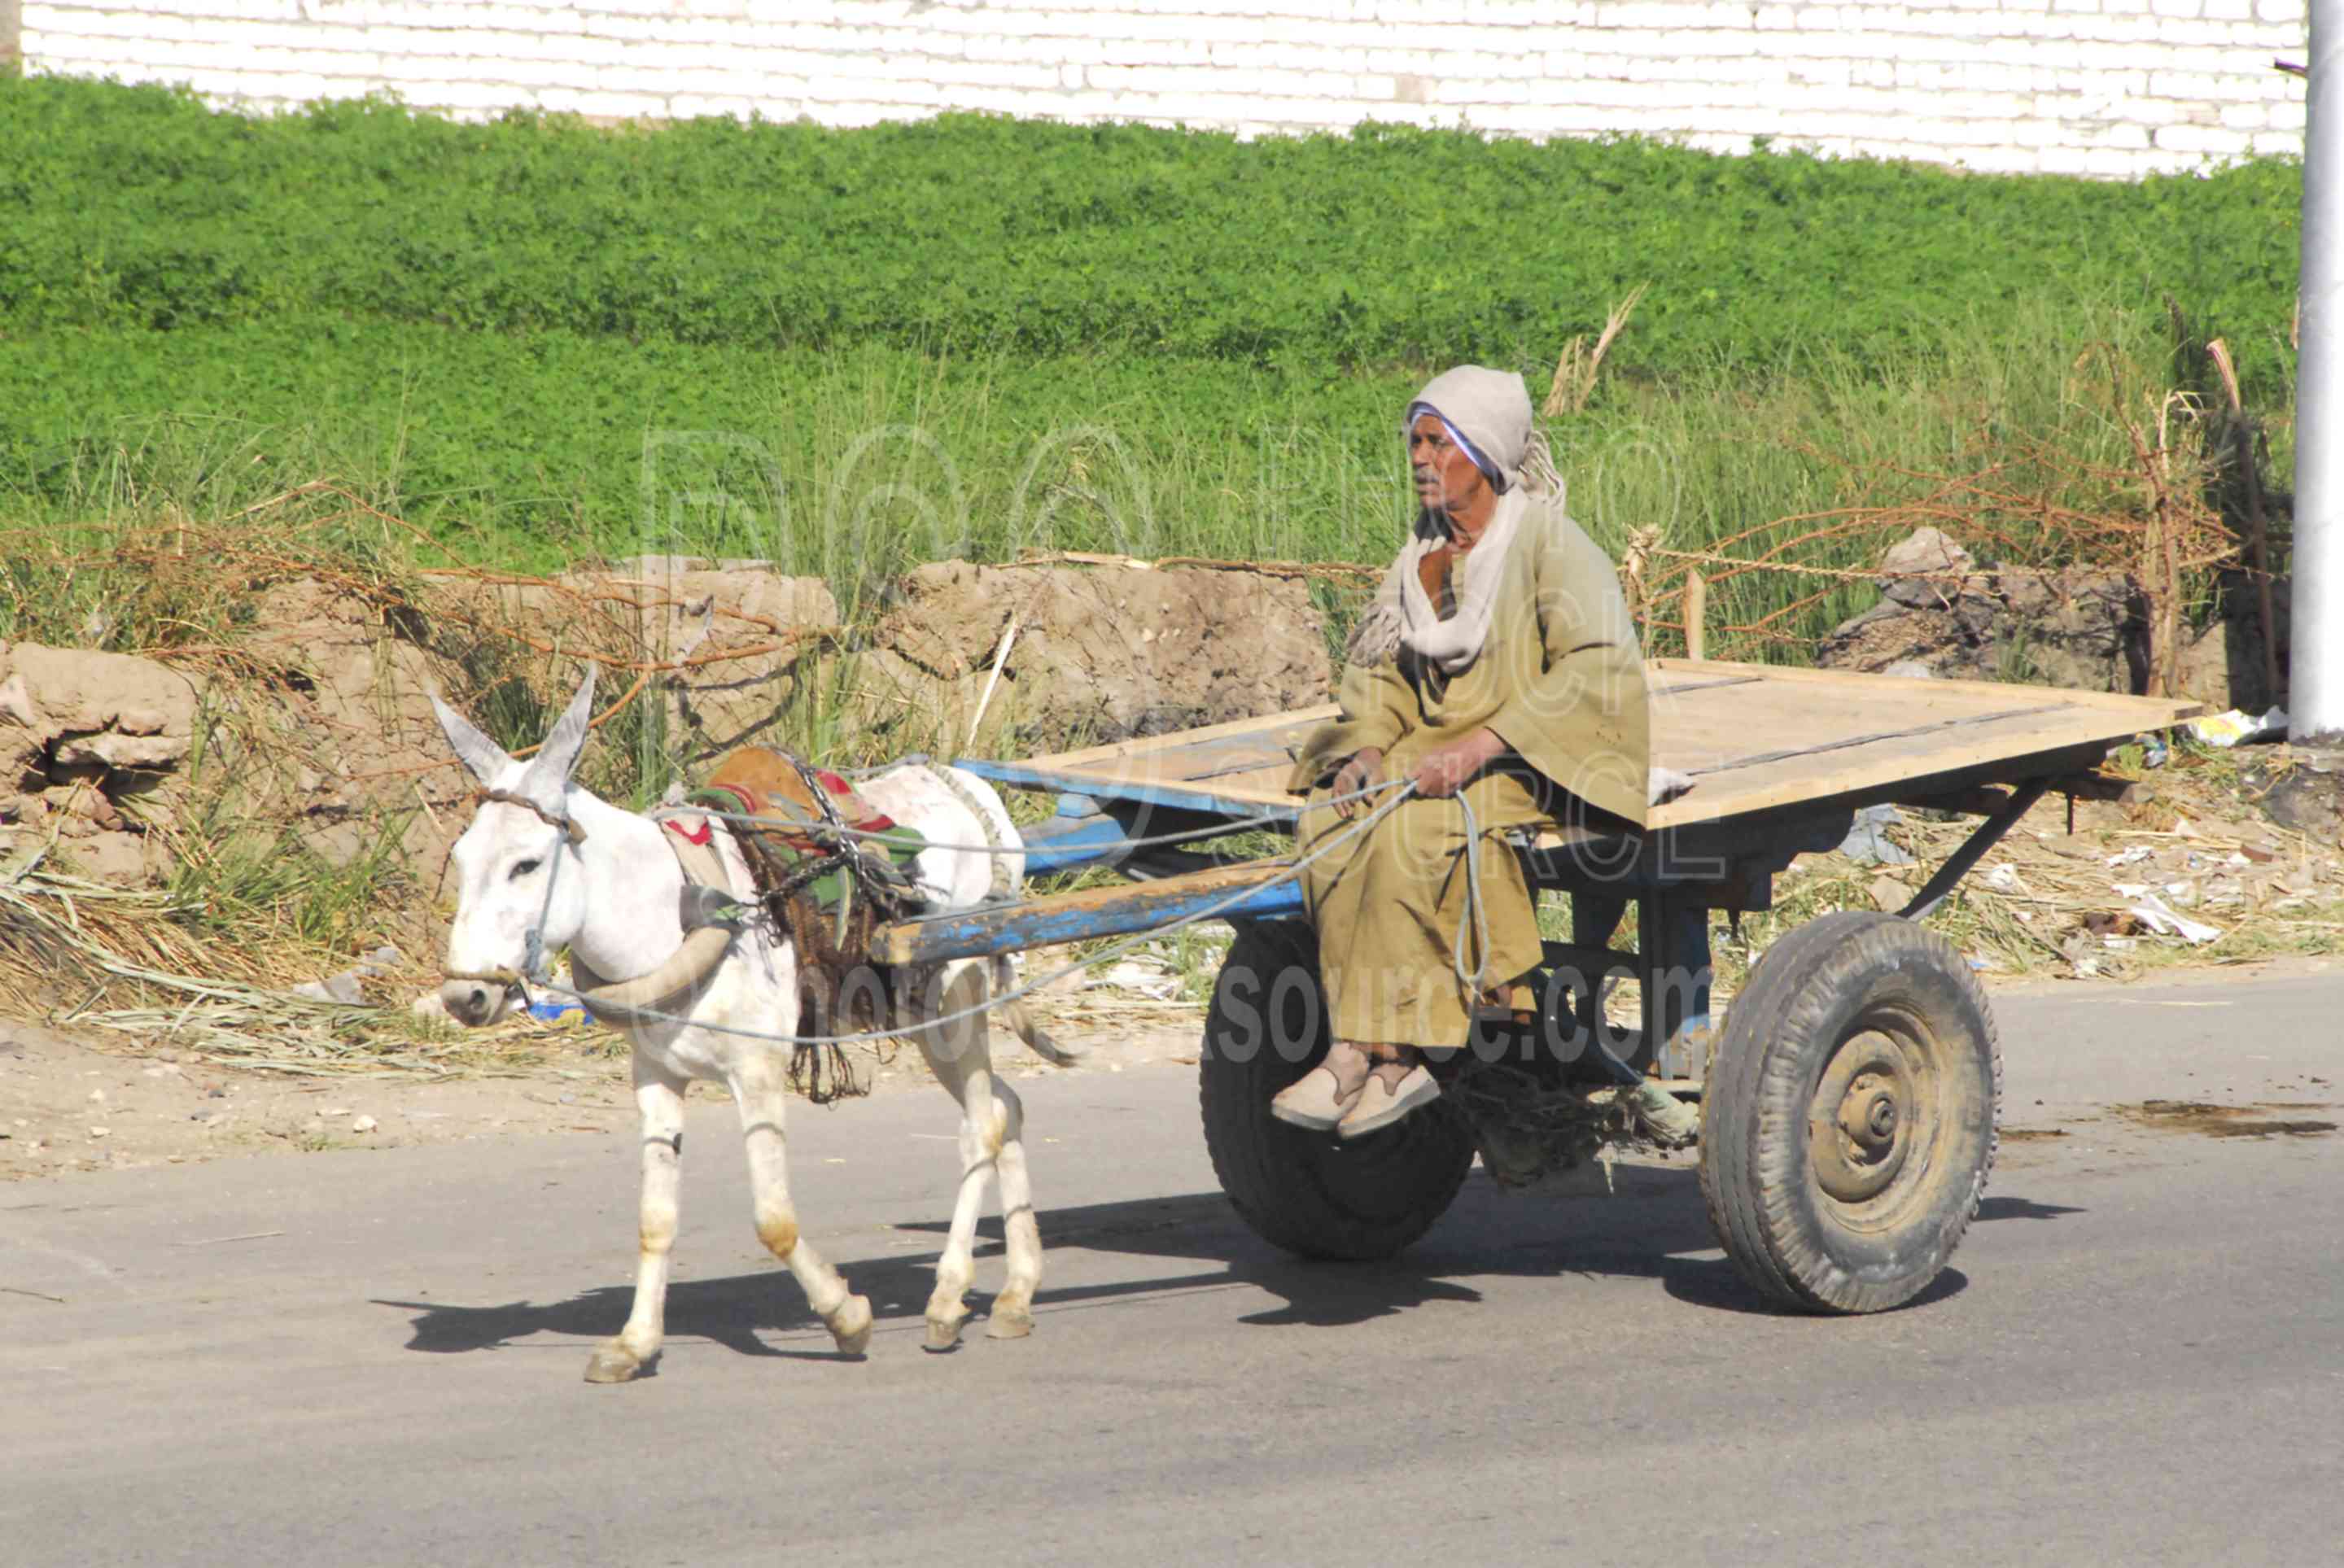 Man on Donkey Cart,cart,donkey,man,old